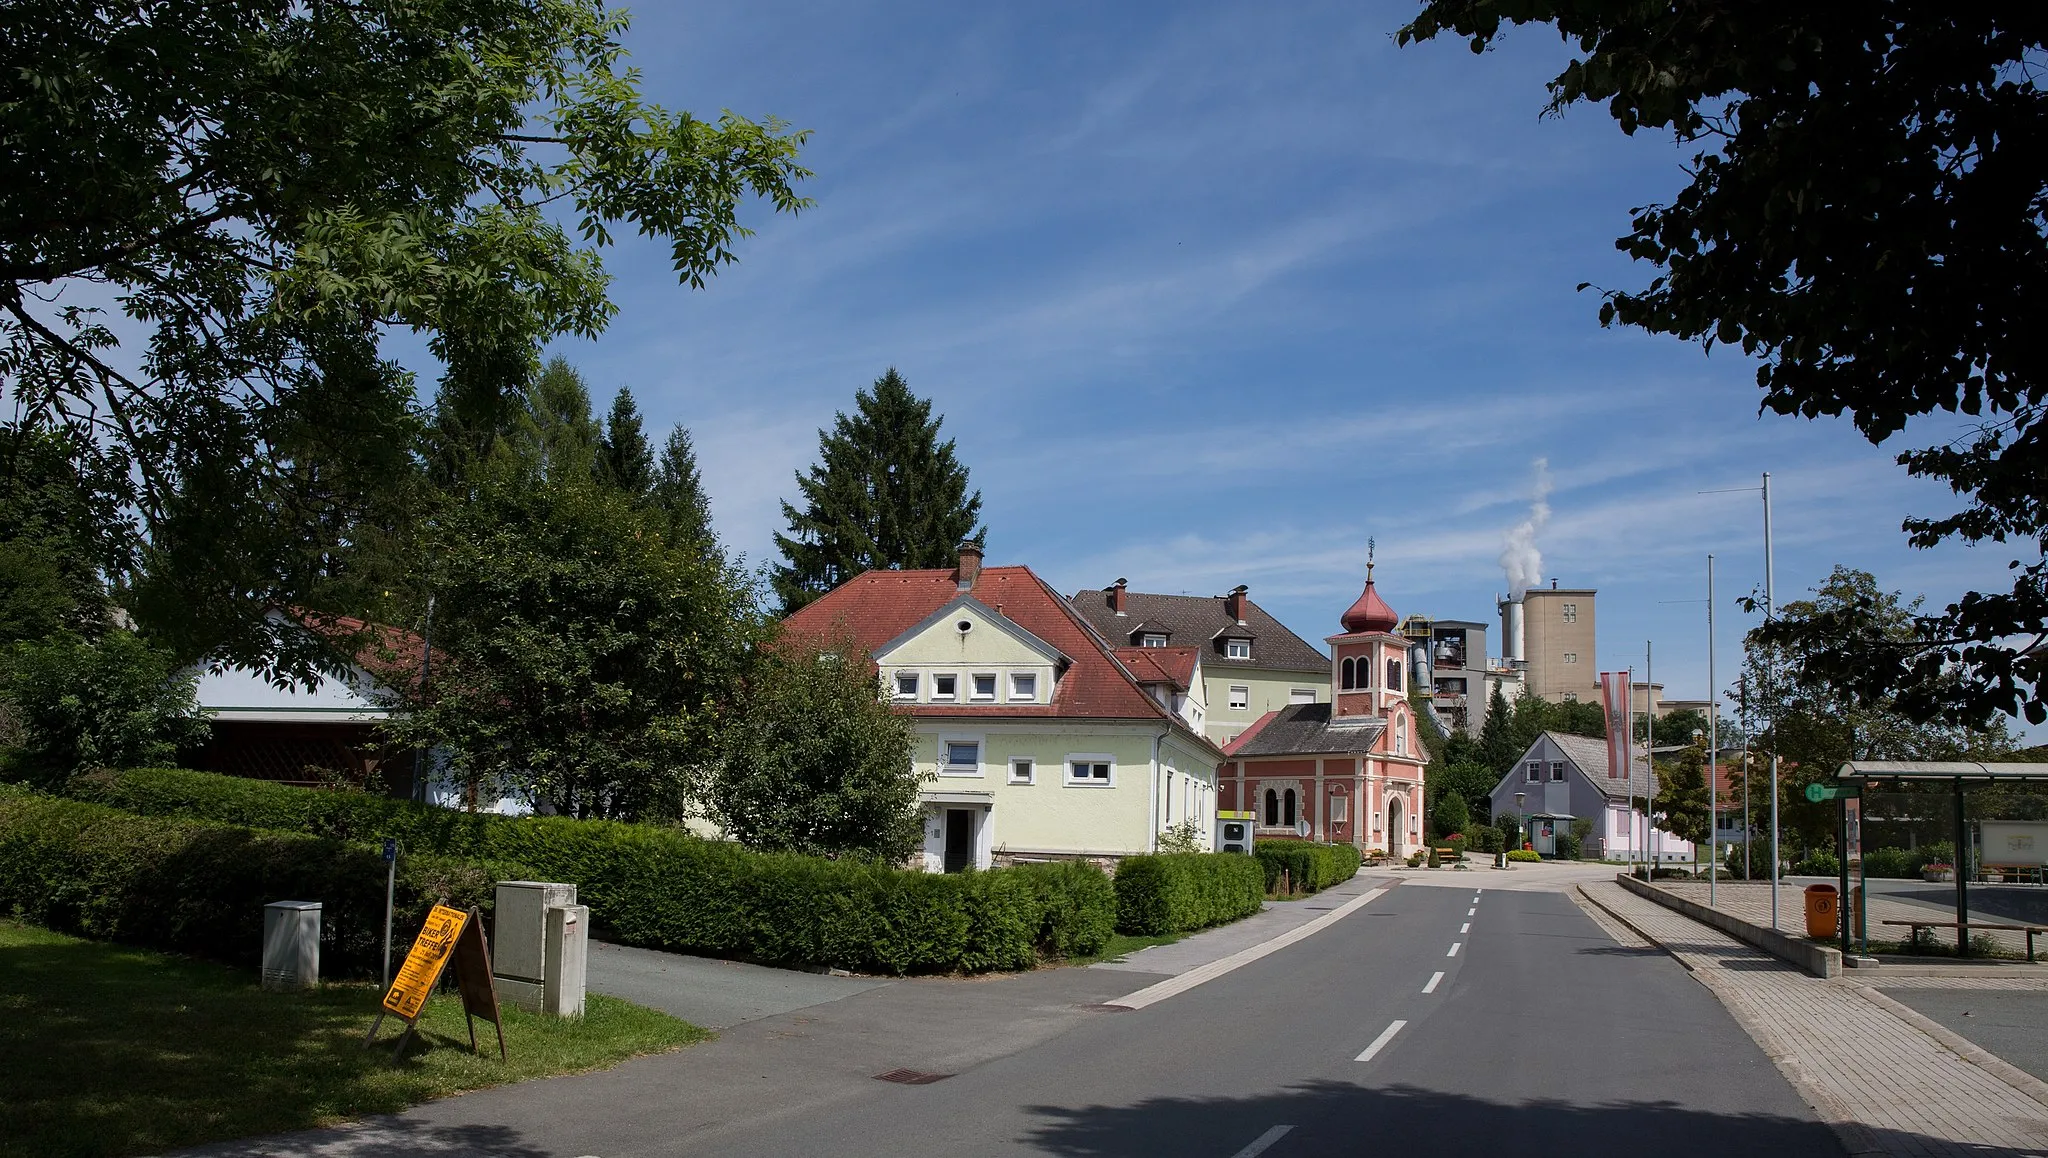 Photo showing: Retznei in southern Styria, Austria